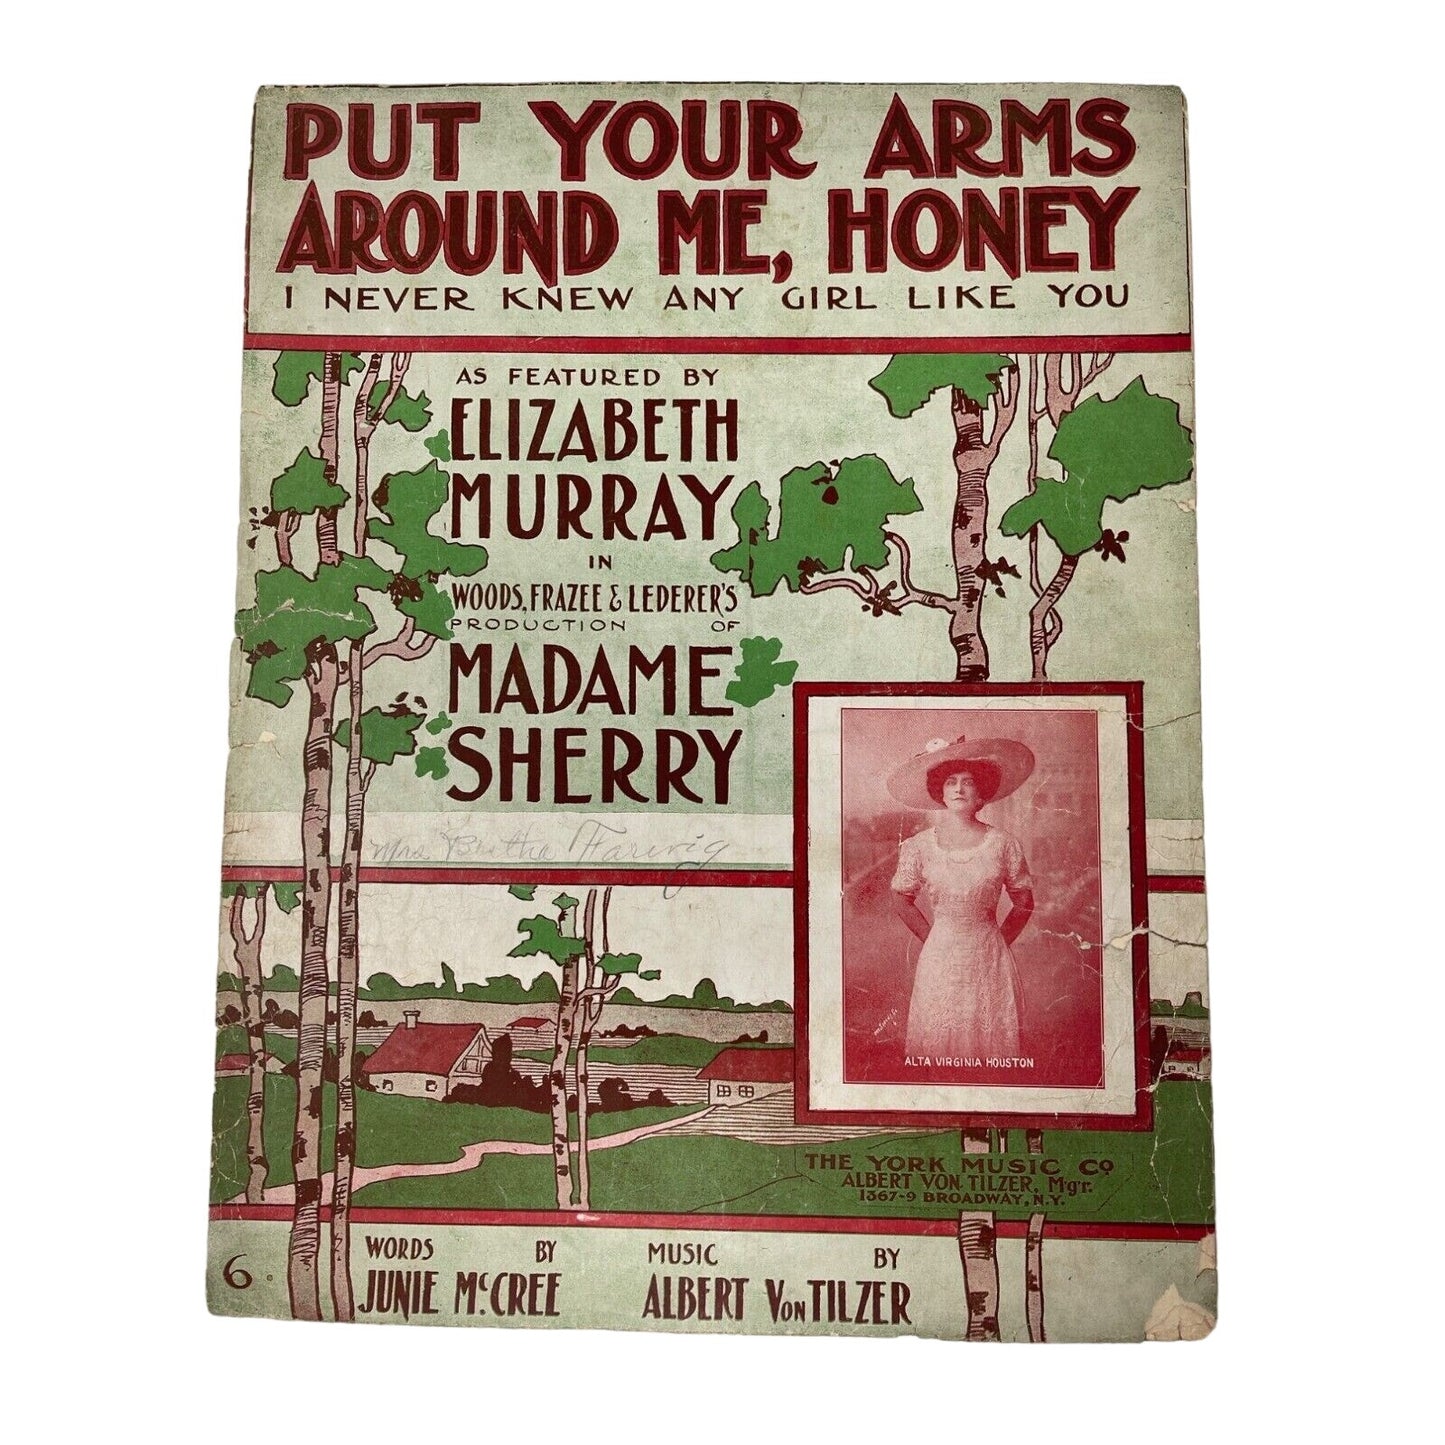 Put Your Arms Around Me Honey Sheet Music Junie McCree Albert VonTilzer